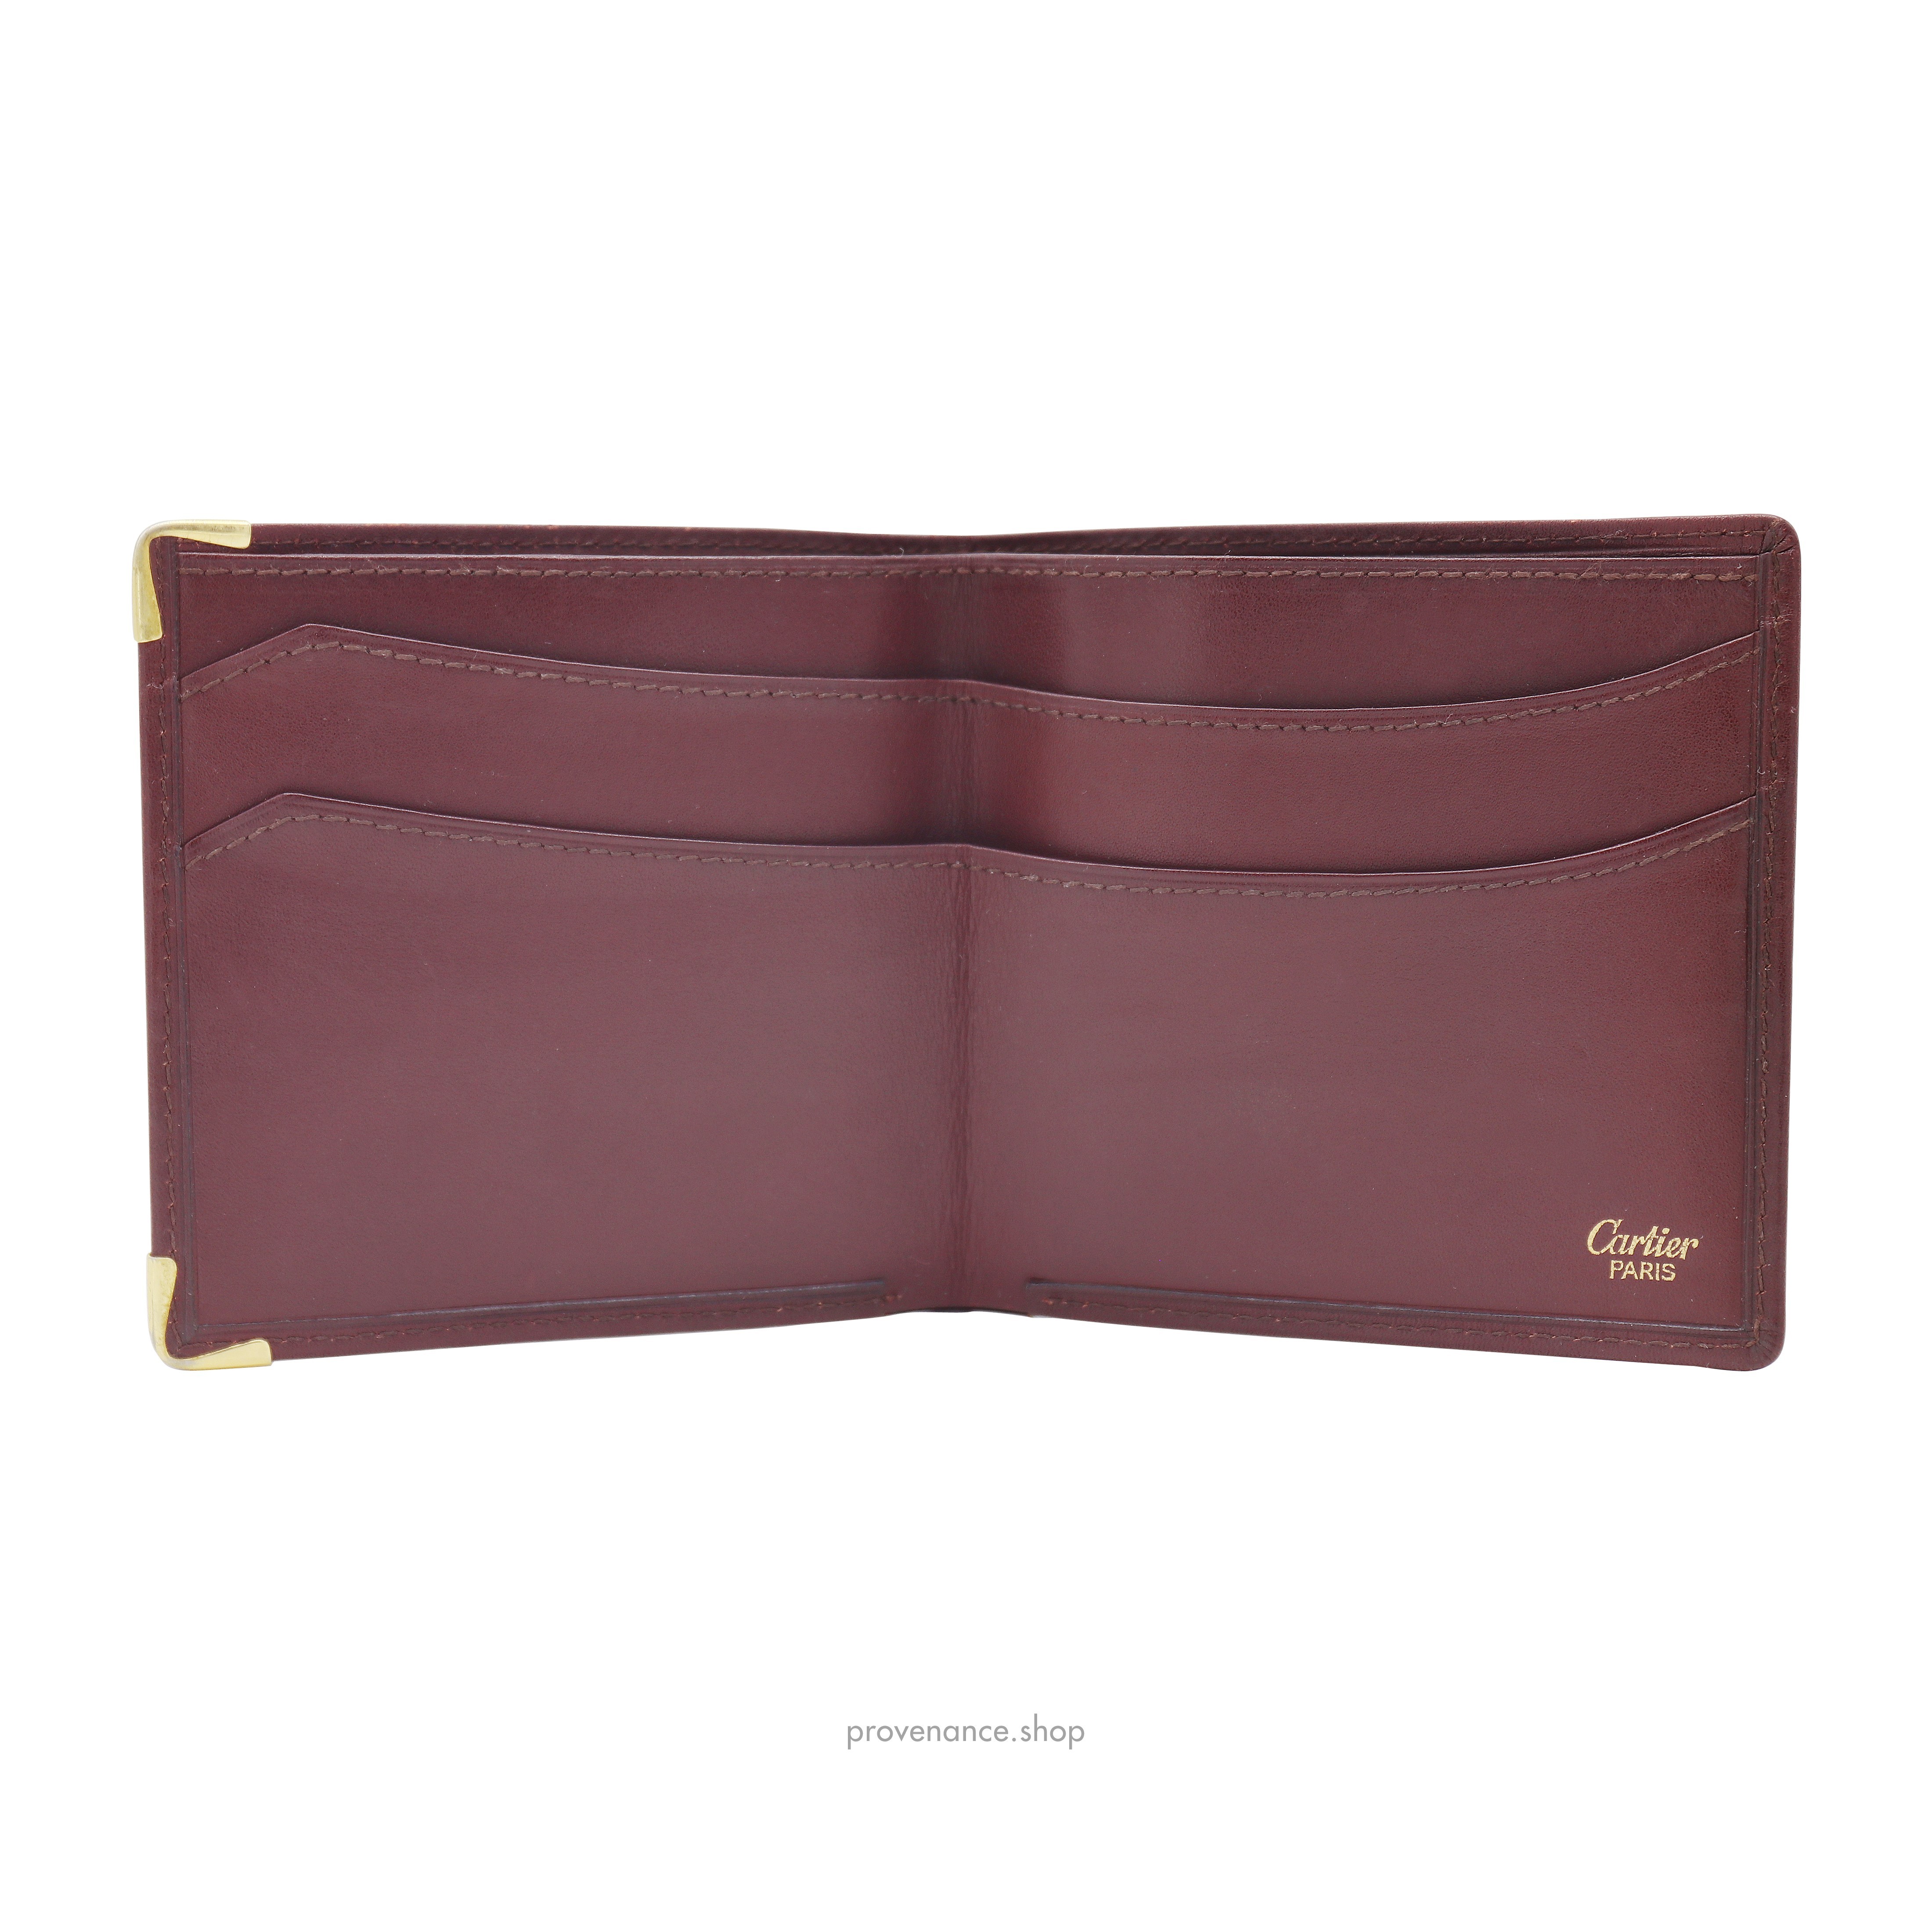 Cartier Bifold Wallet - Burgundy Calfskin Leather - 5